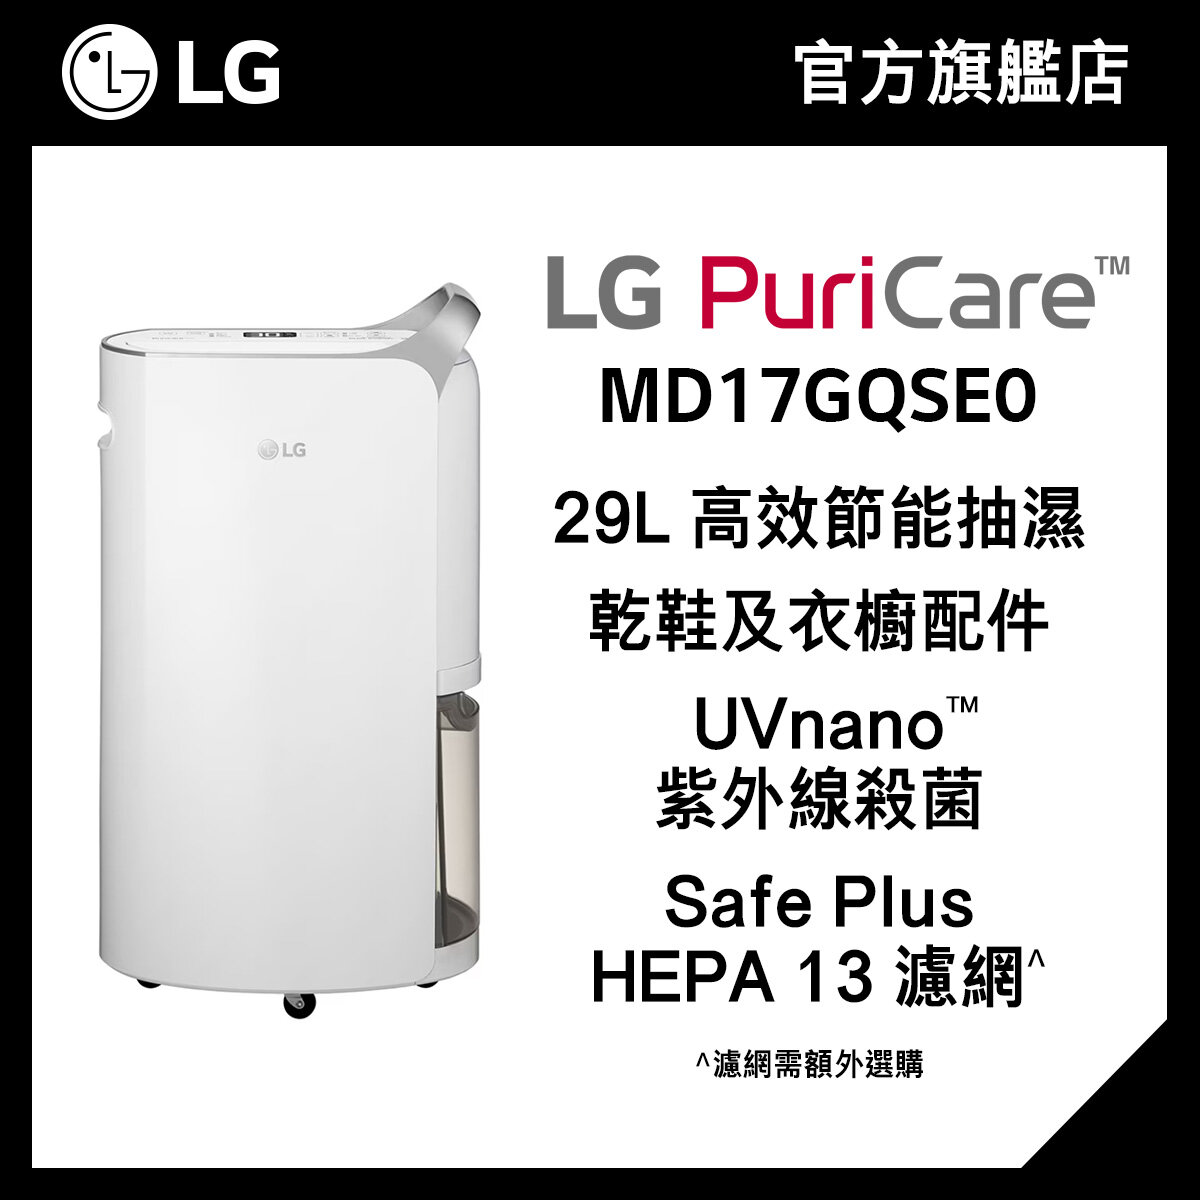 LG PuriCare™ 29L 變頻式離子殺菌智能抽濕機 MD17GQSE0 (Uvnano殺菌, HEPA 13 濾網)